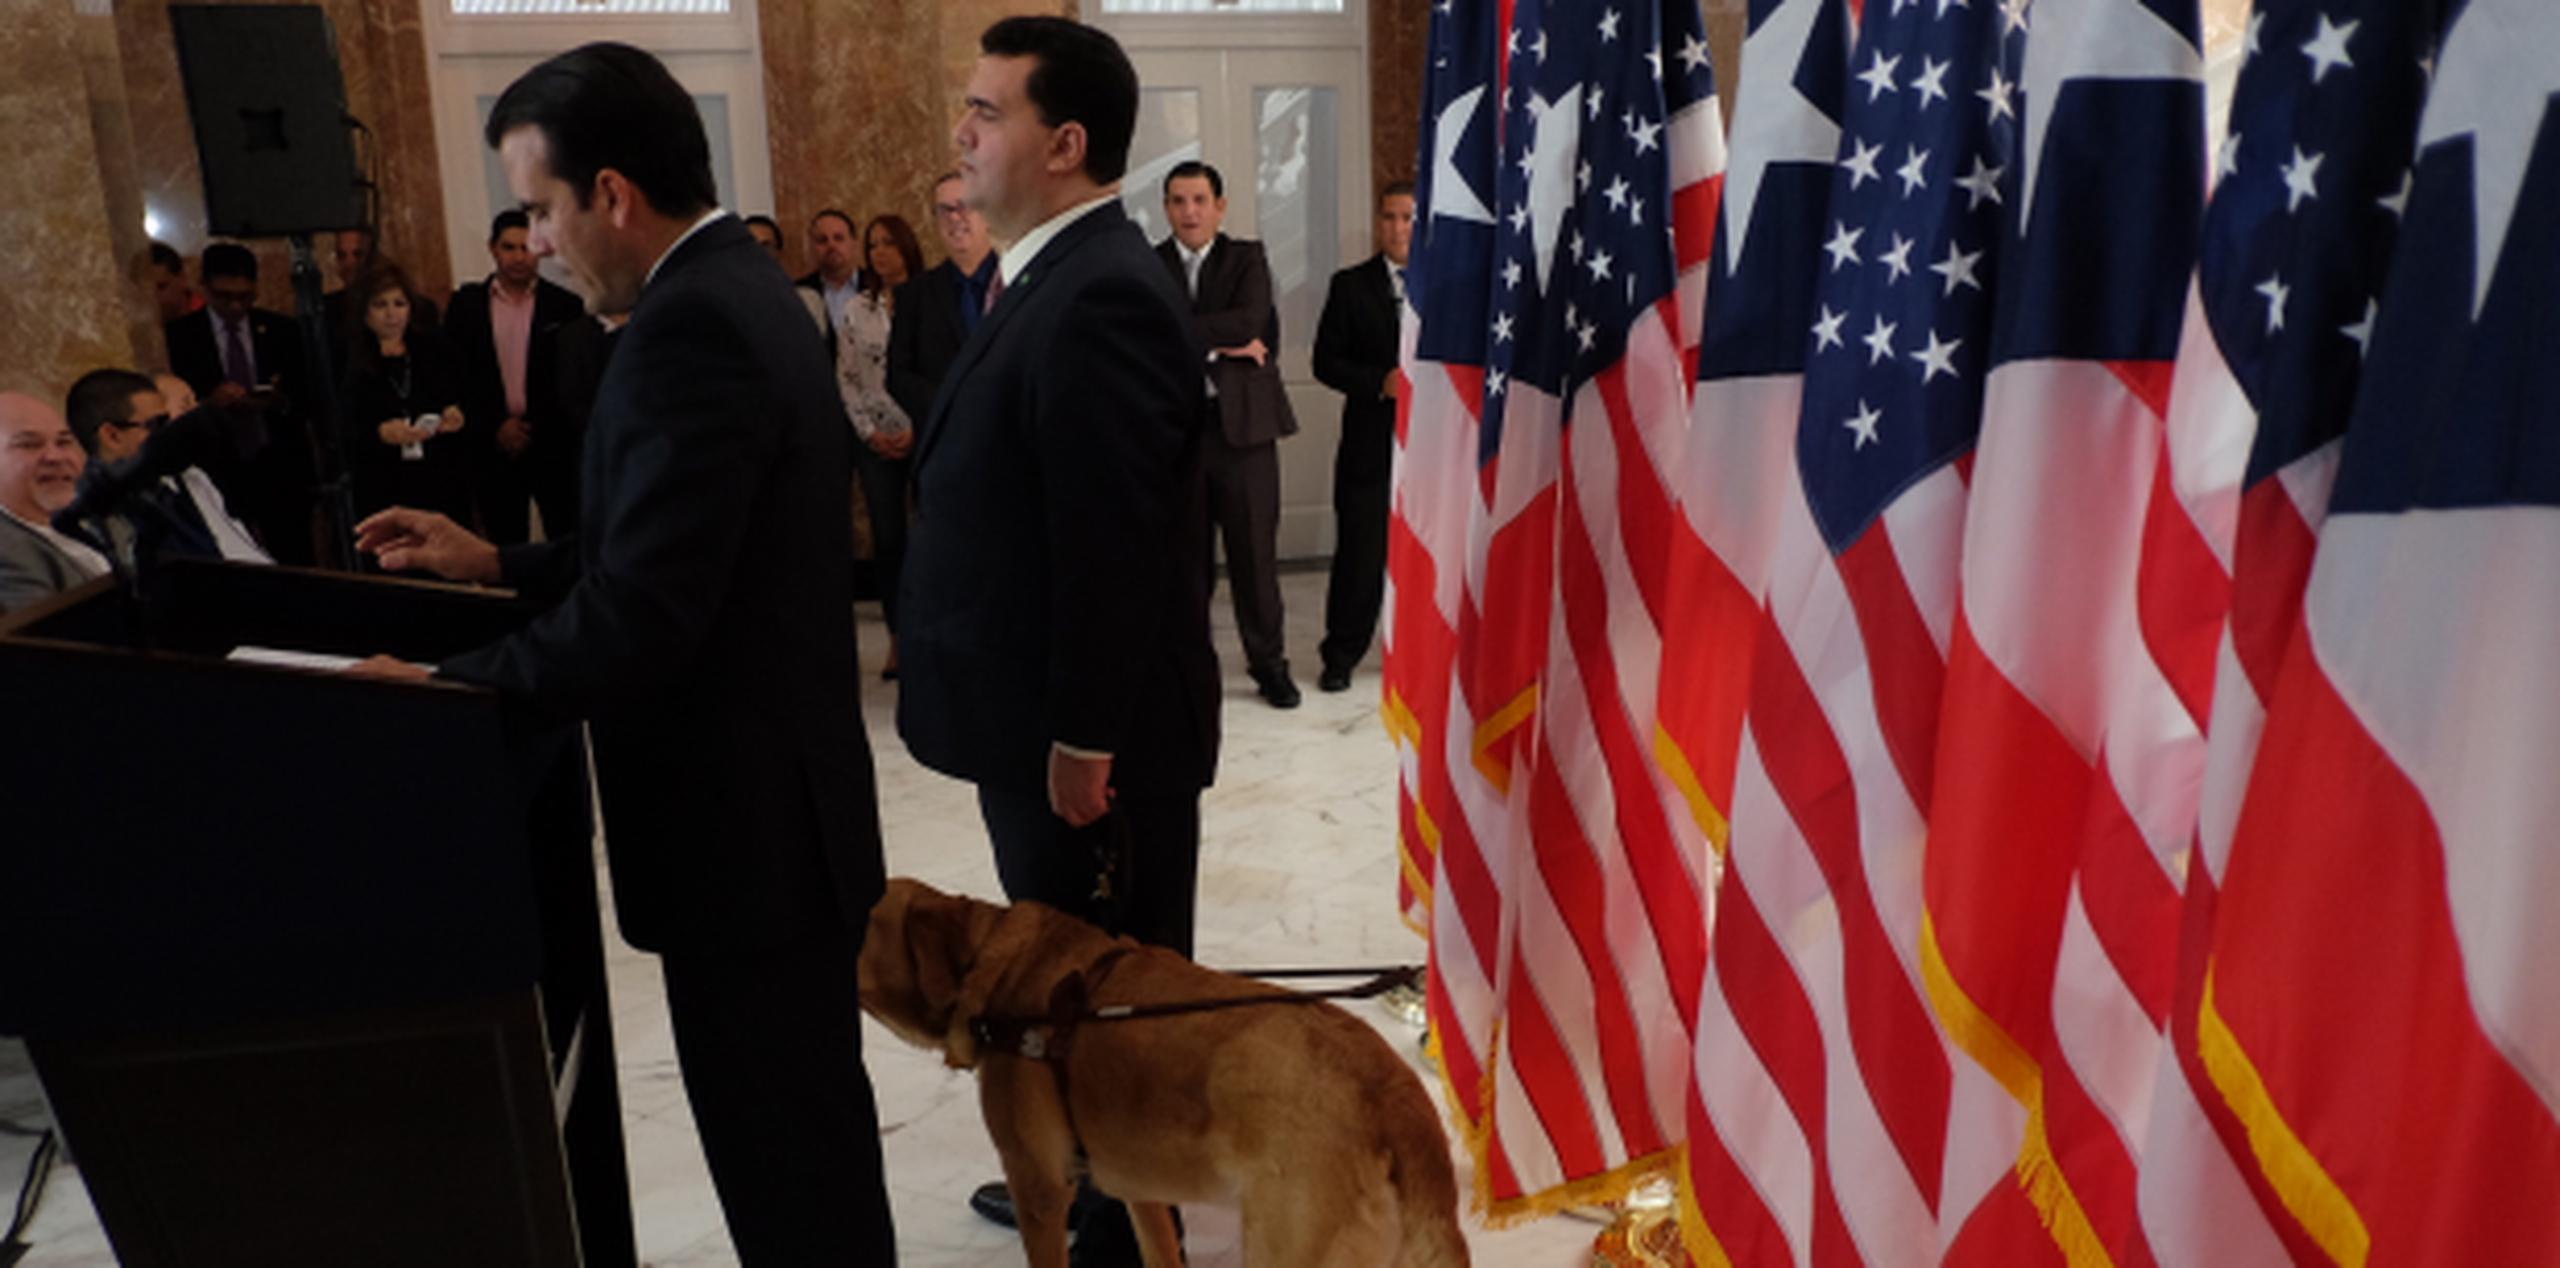 Contreras, acompañado de su perro guía, escucha las palabras del gobernador Rosselló. (xavier.araujo@gfrmedia.com)